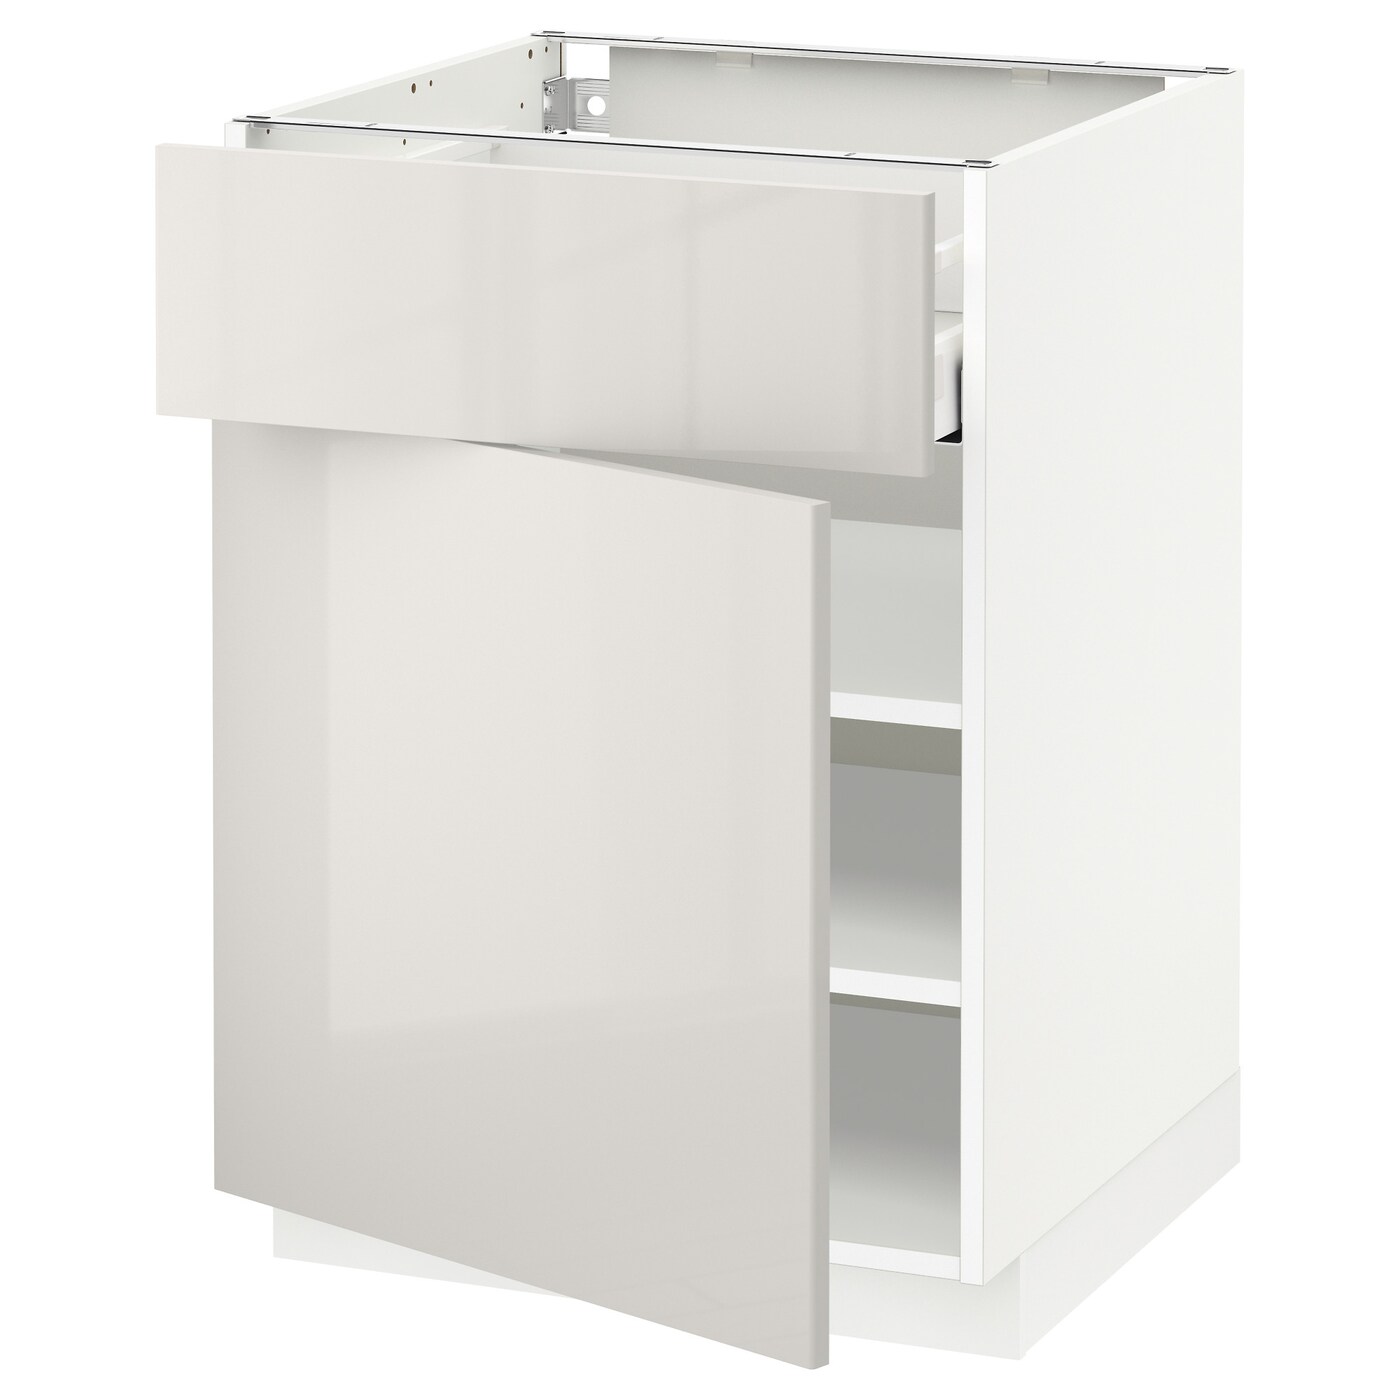 Напольный шкаф - IKEA METOD MAXIMERA, 88x62x60см, белый/светло-серый, МЕТОД МАКСИМЕРА ИКЕА